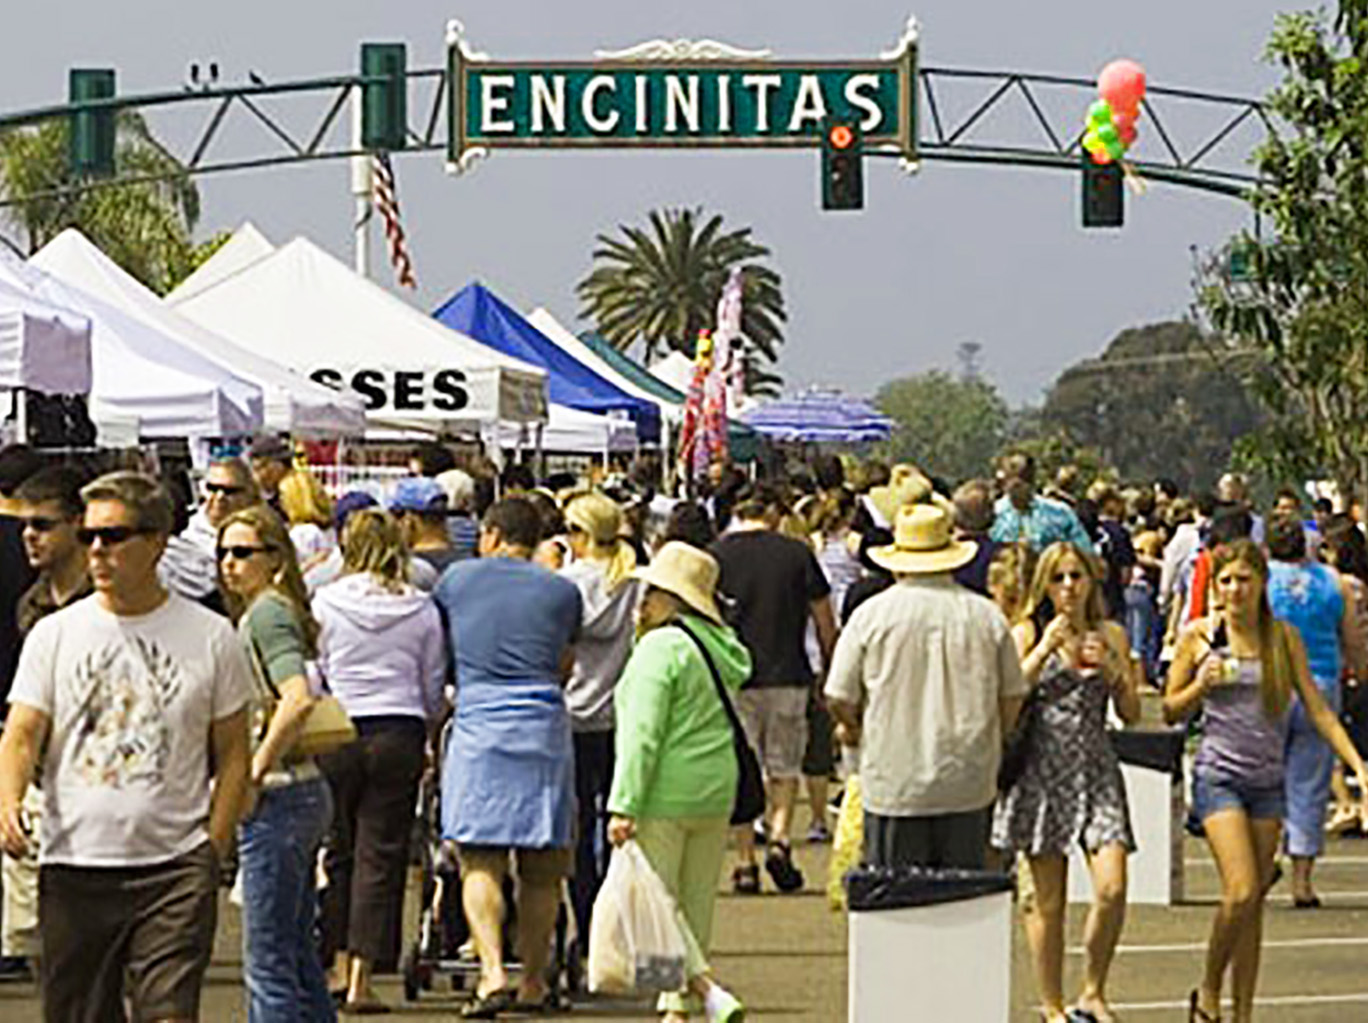 April Street Fair in Encinitas, Ca.